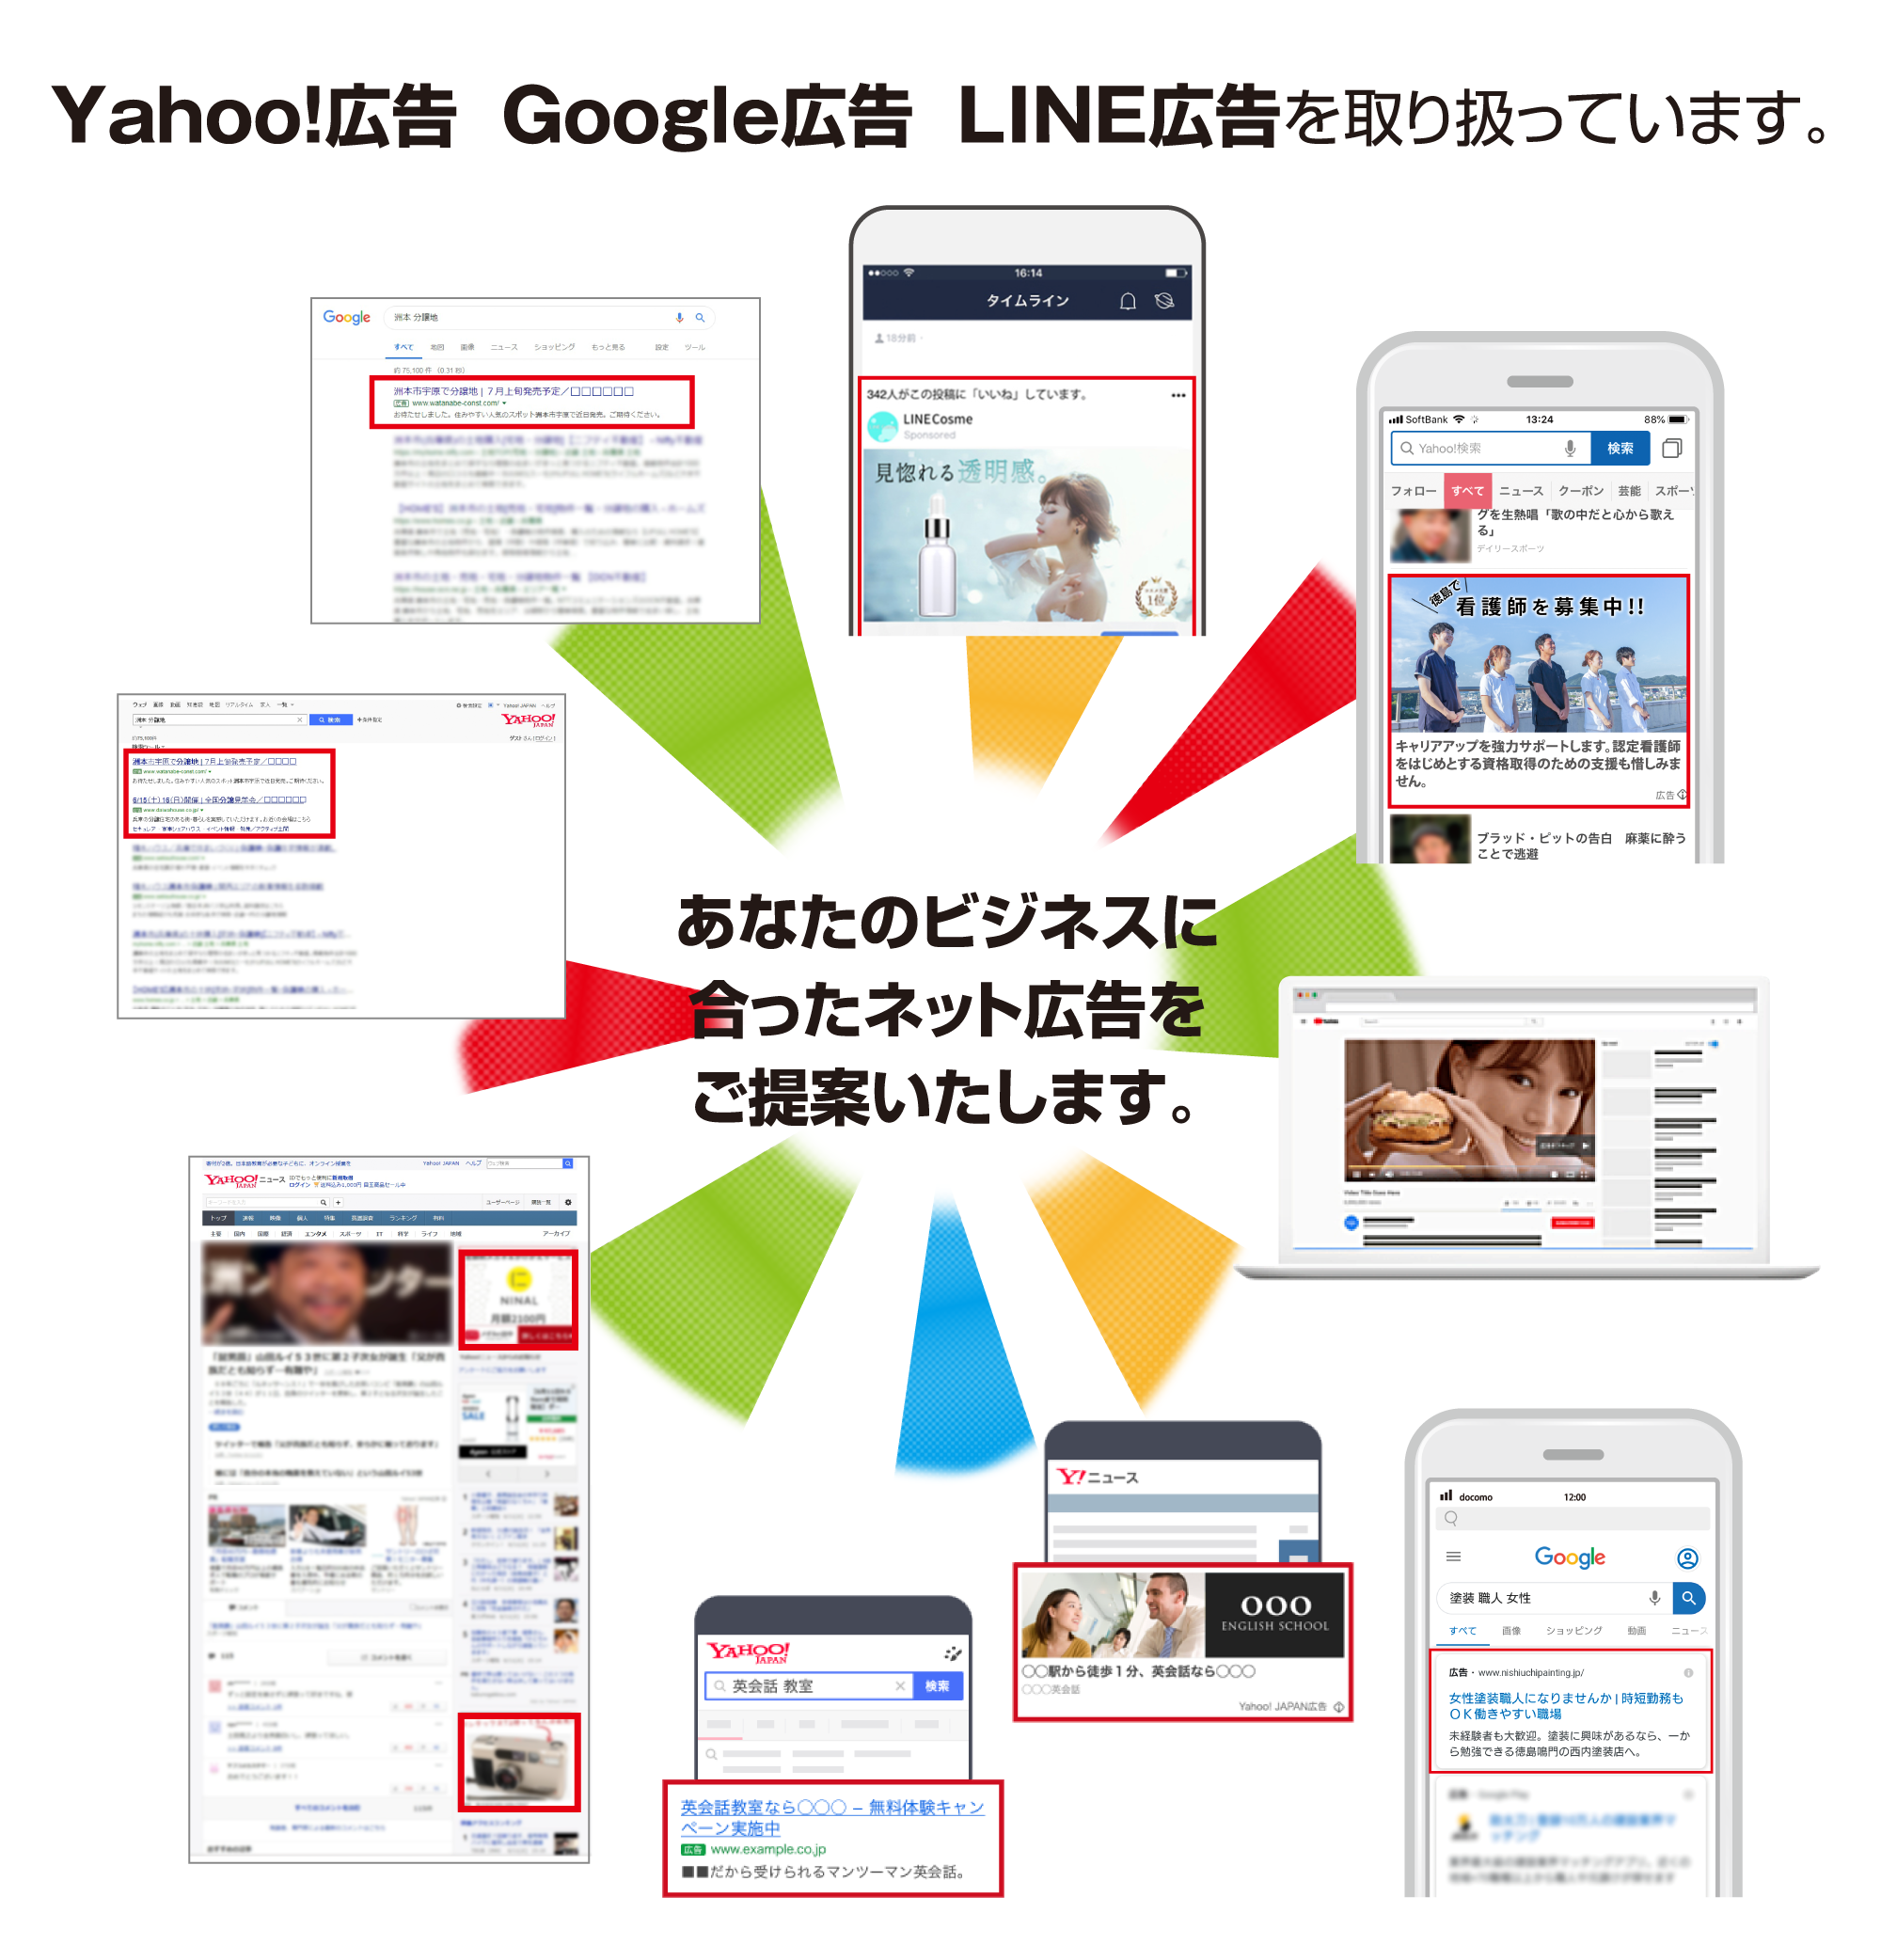 Yahoo!広告・Google広告・LINE広告を取り扱っています。あなたのビジネスに合ったネット広告をご提案いたします。